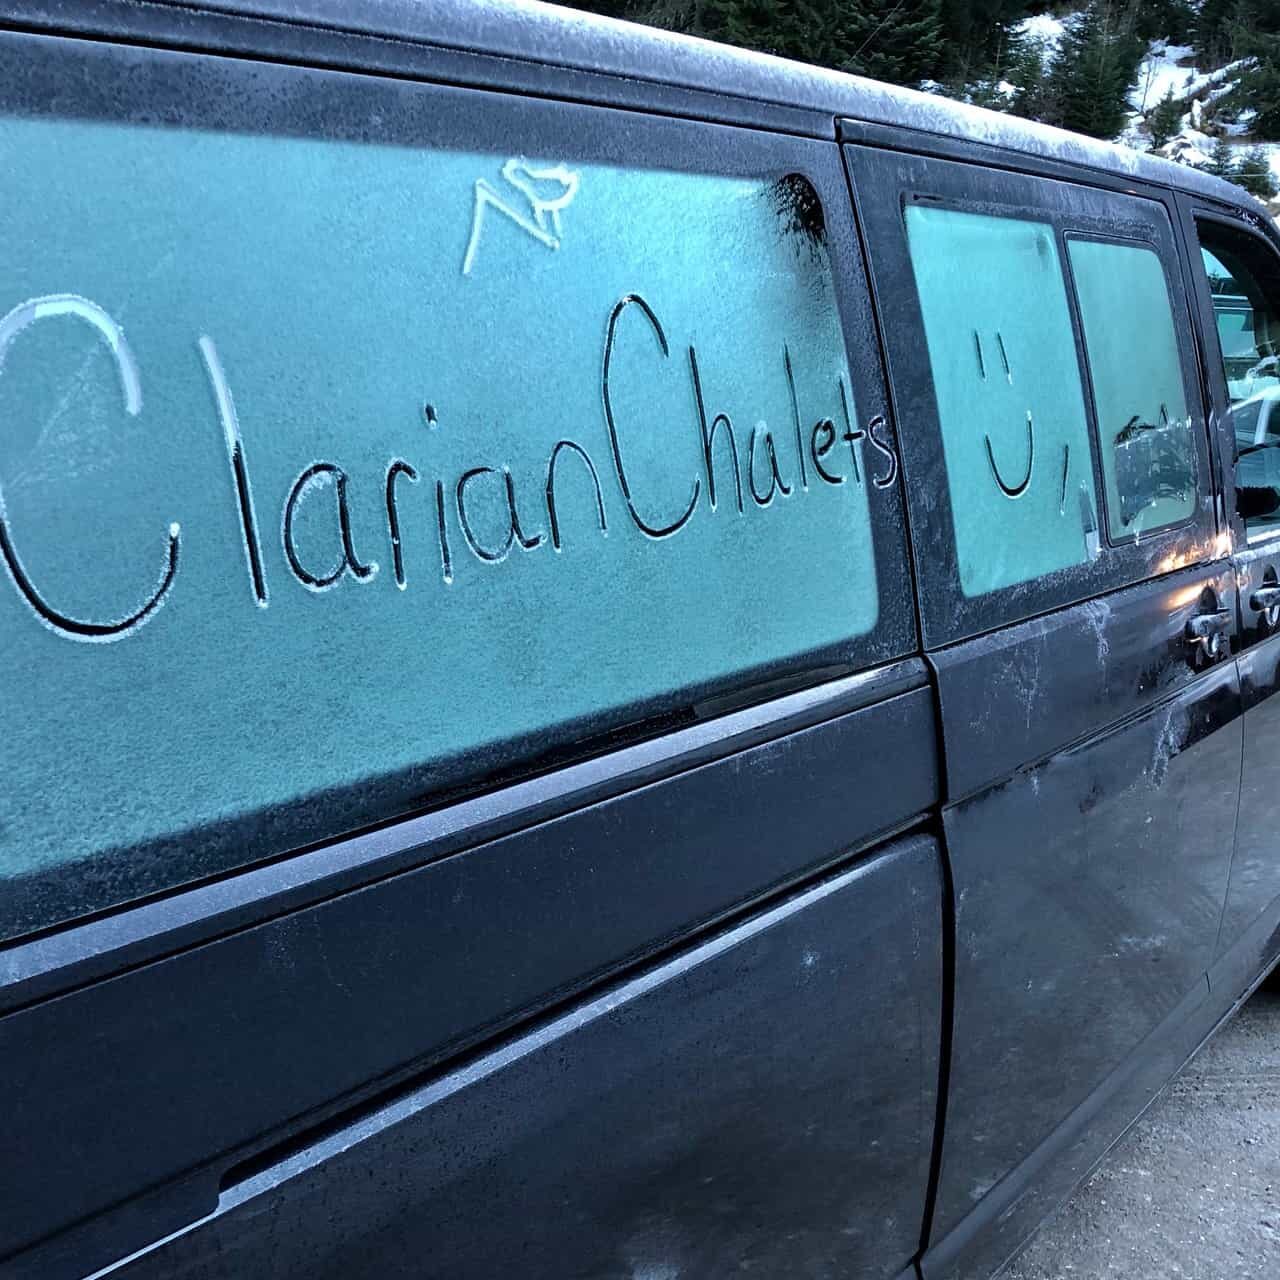 clarian chalets minibus